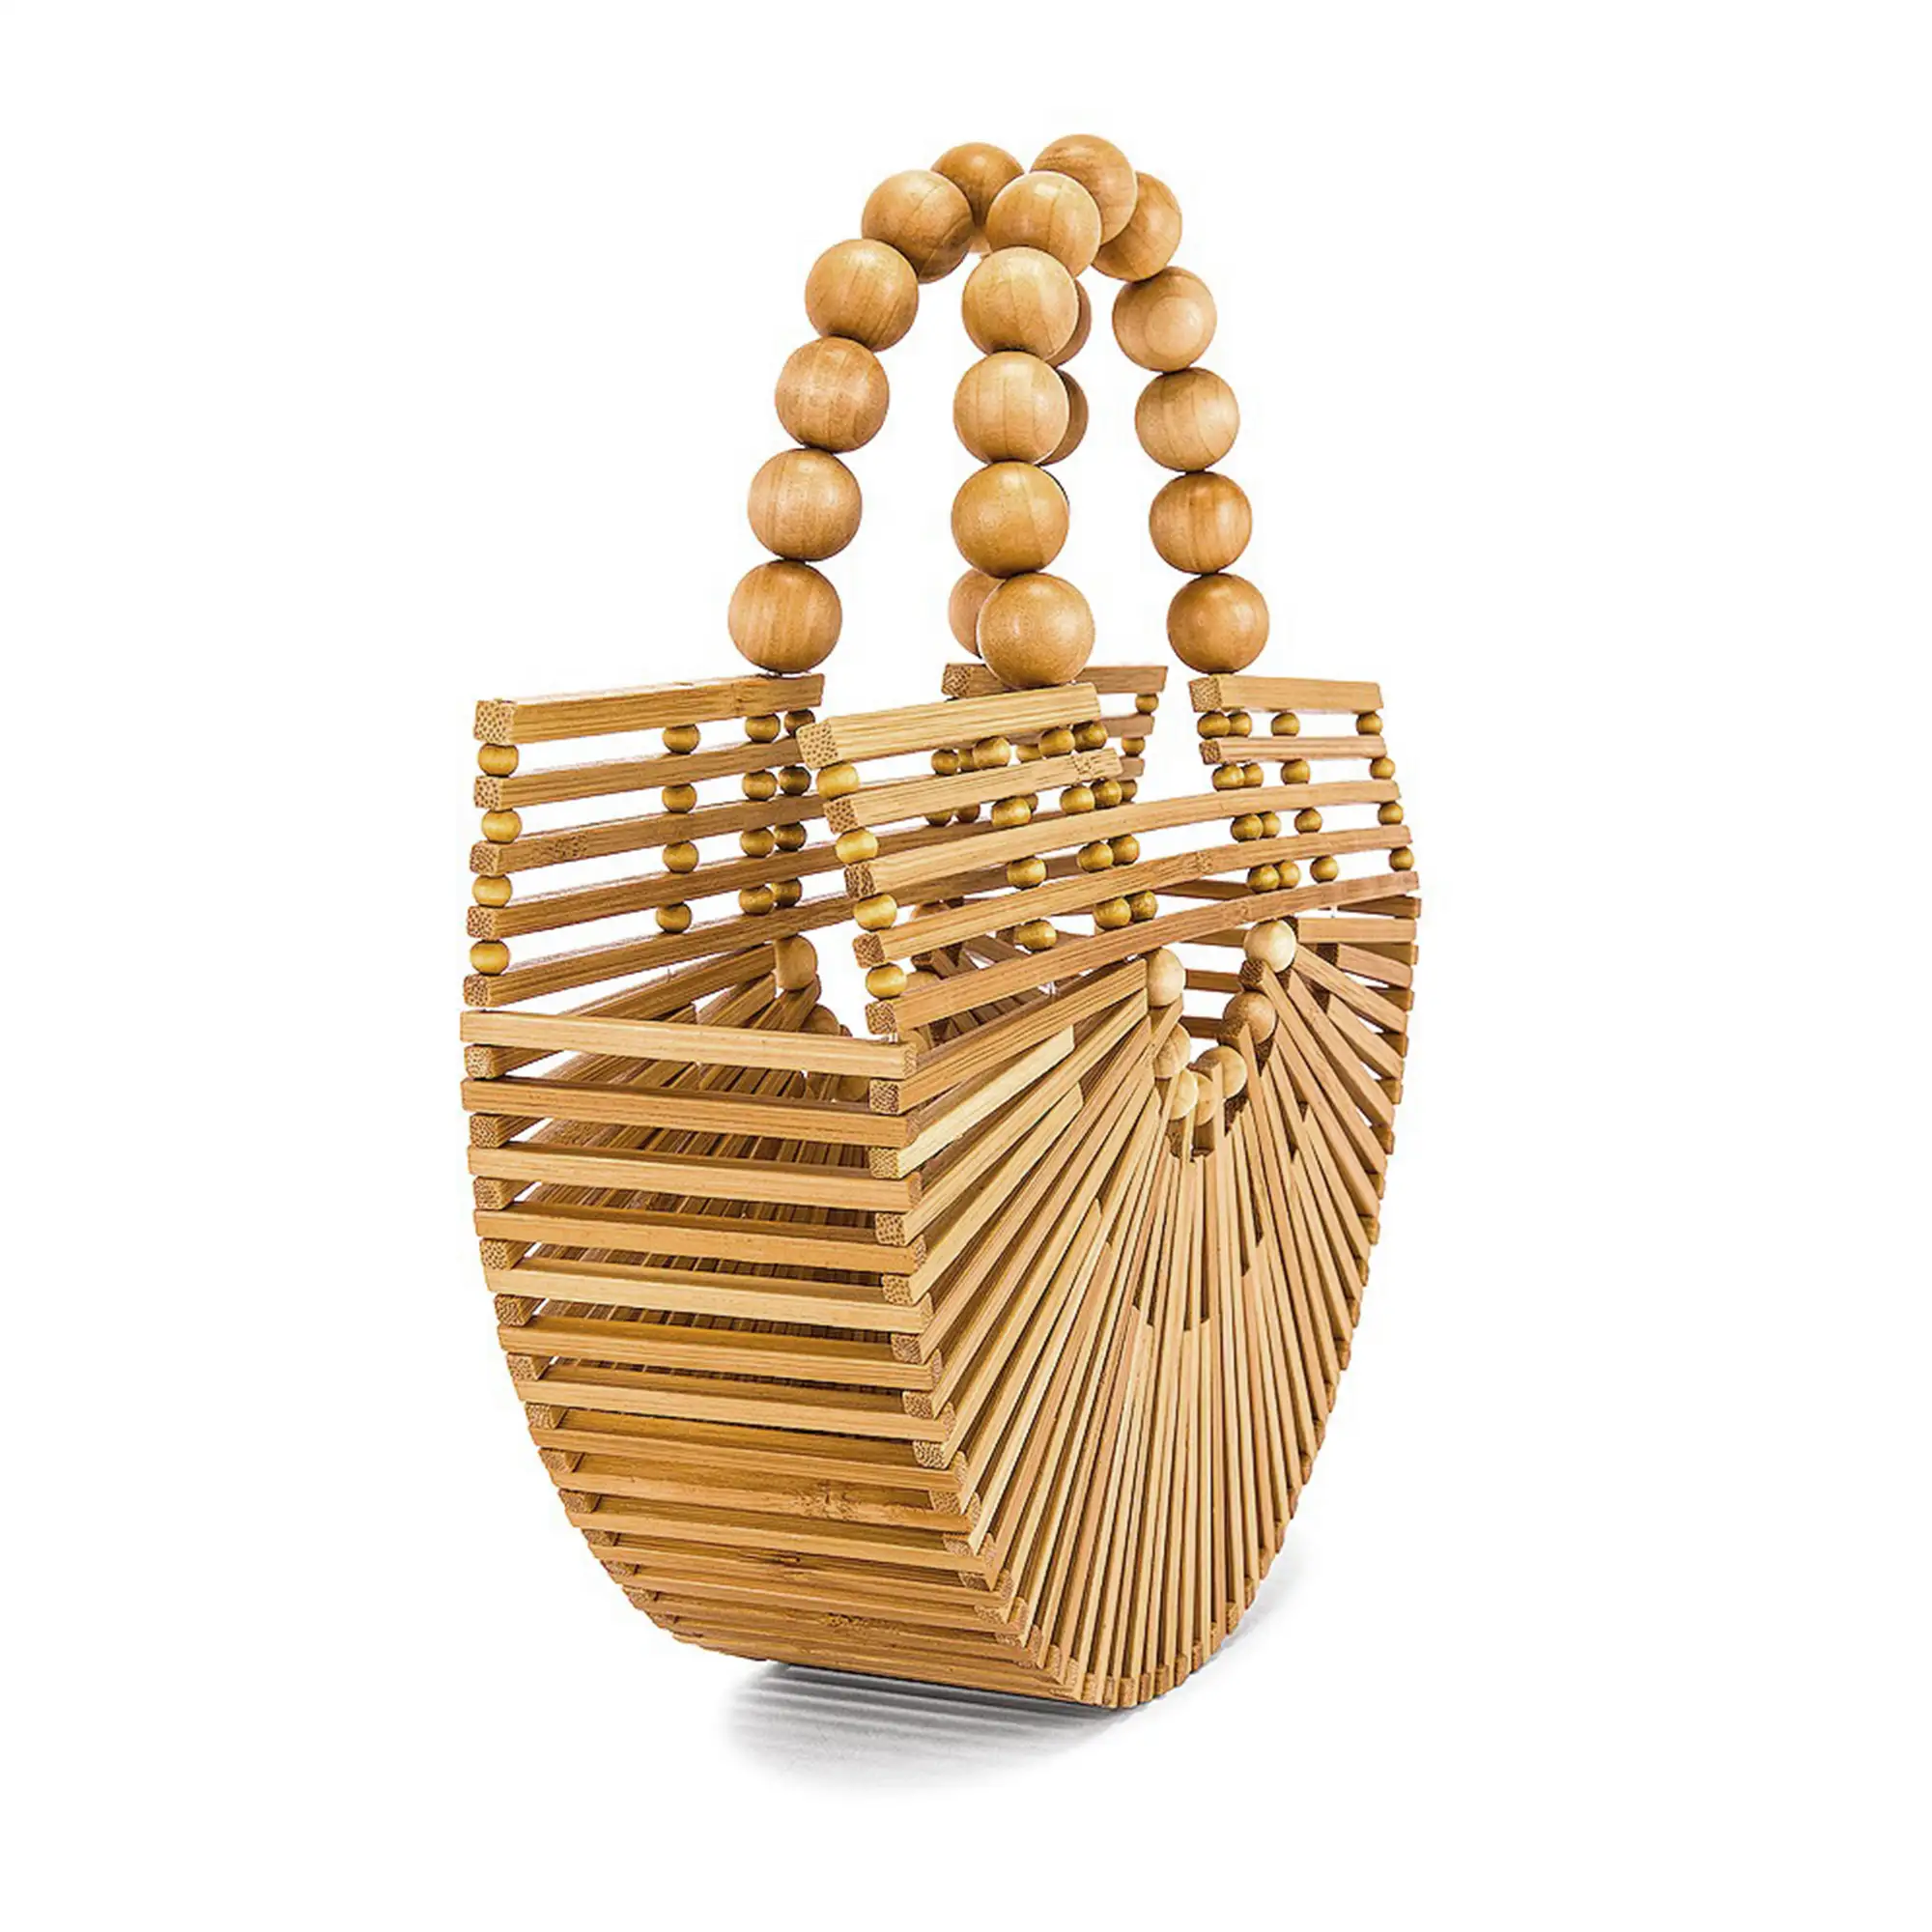 Zoldo bolso de mano en madera de bambú.